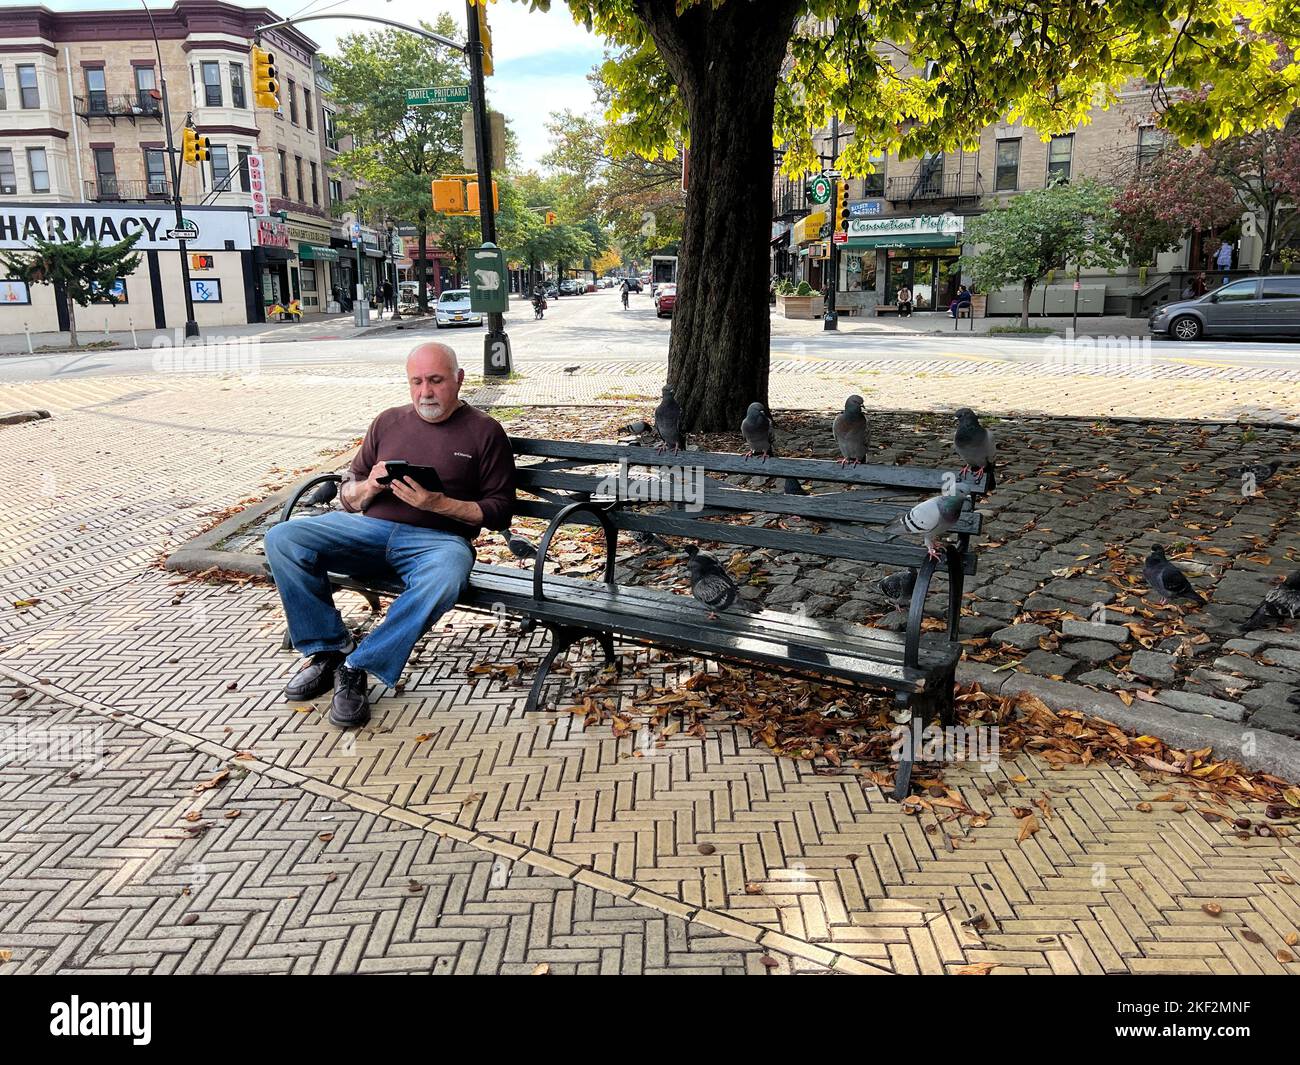 El hombre comparte un banco con las palomas en Prichard Square por Prospect Park a lo largo de Prospect Park West en Brooklyn, Nueva York. Foto de stock